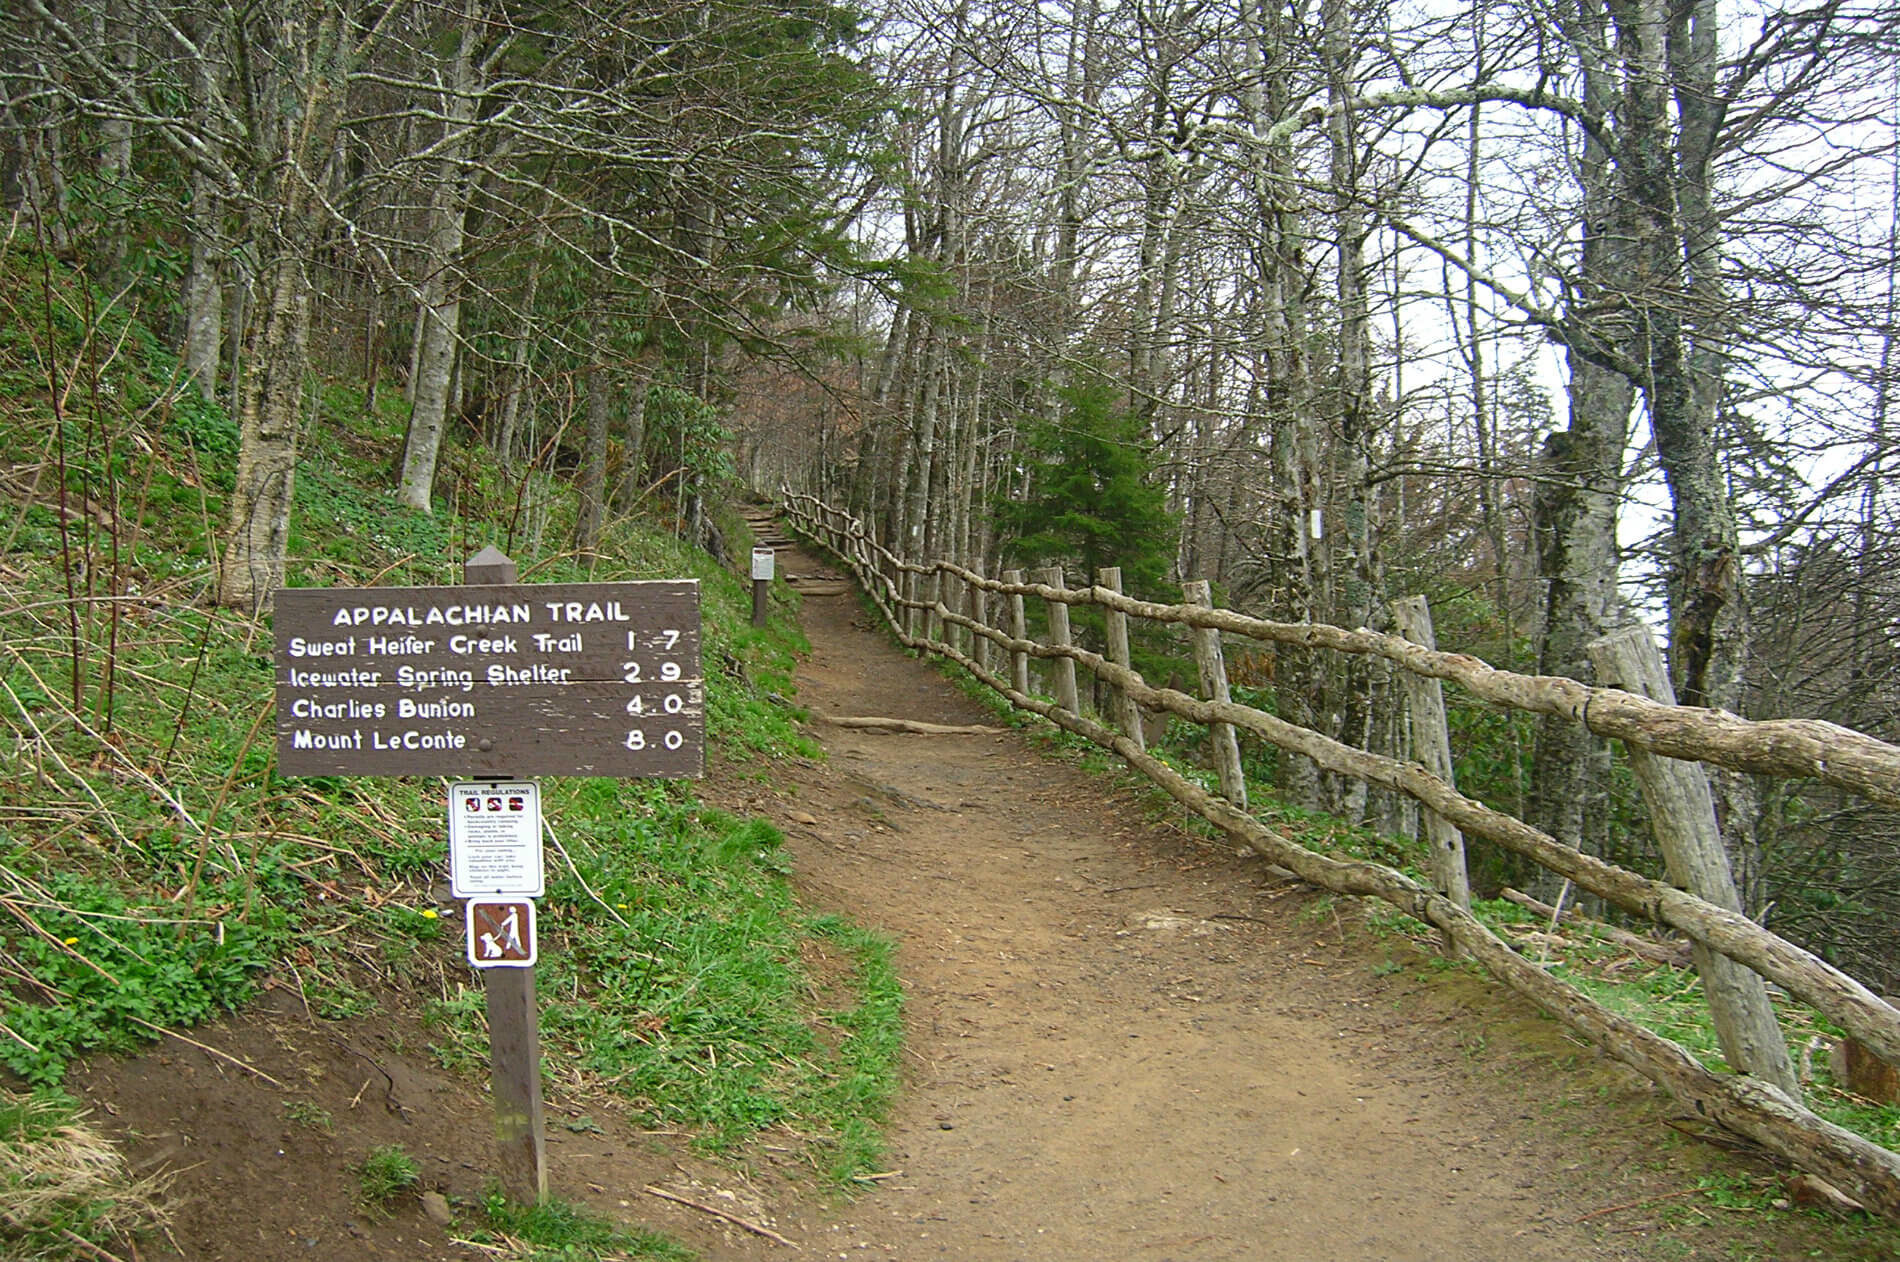 Dirt walking trail in forest alongside a split-rail wooden fence.